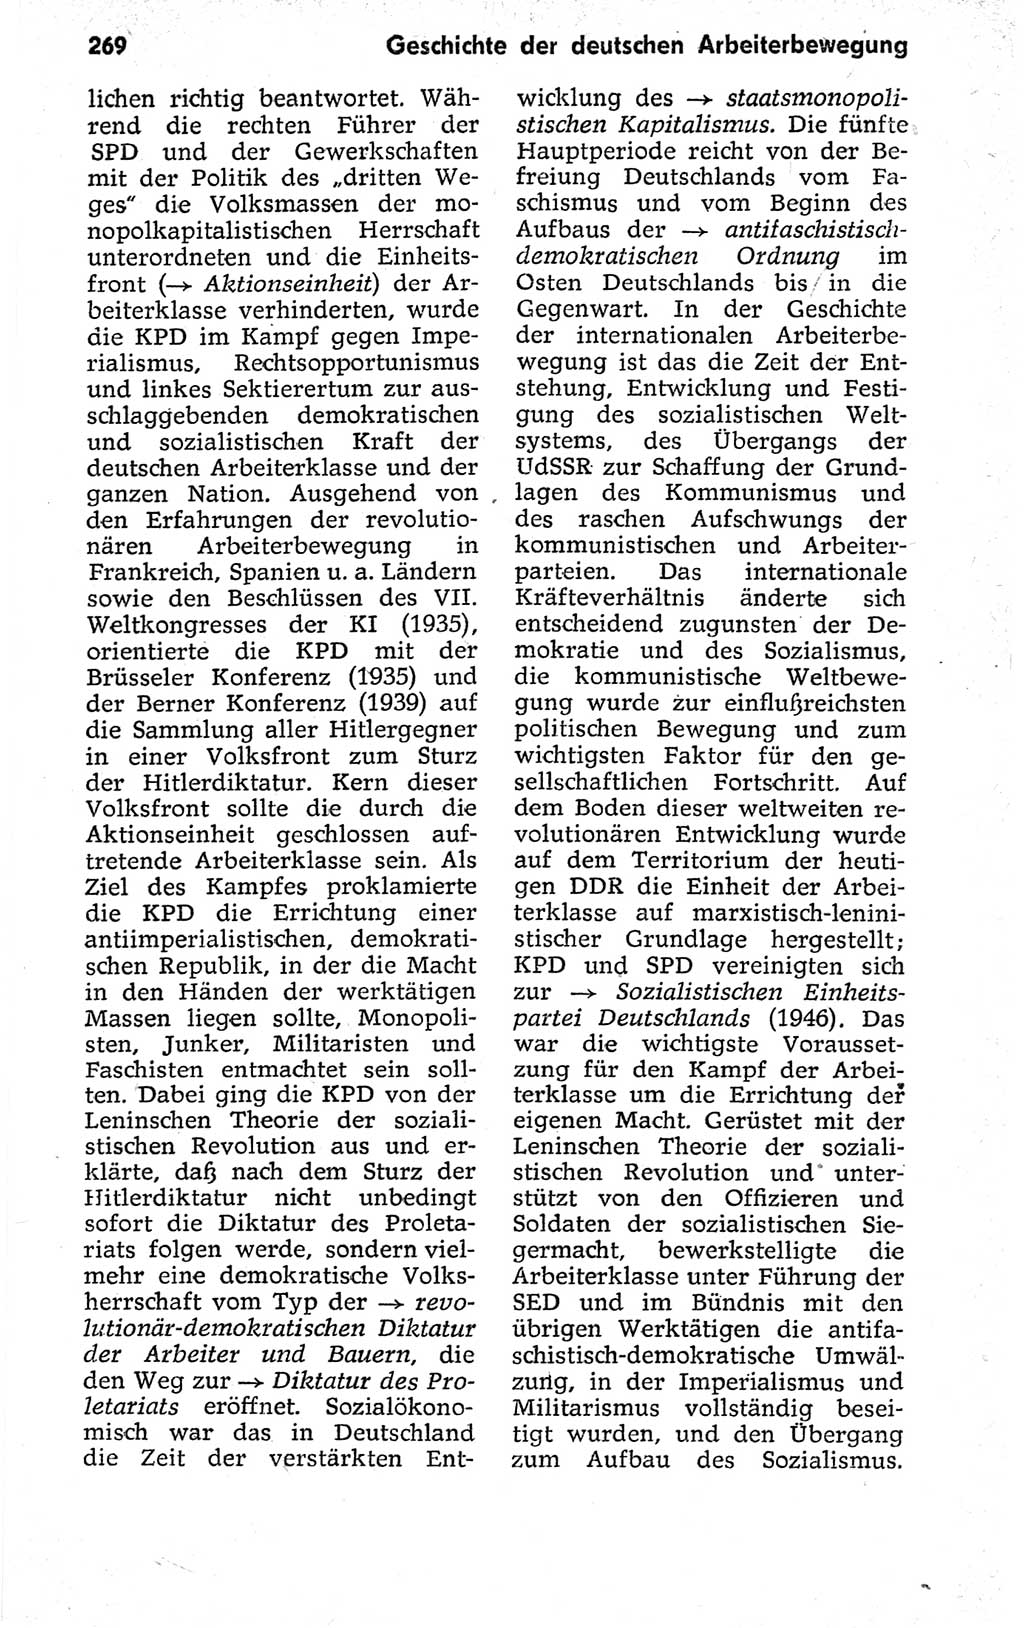 Kleines politisches Wörterbuch [Deutsche Demokratische Republik (DDR)] 1973, Seite 269 (Kl. pol. Wb. DDR 1973, S. 269)